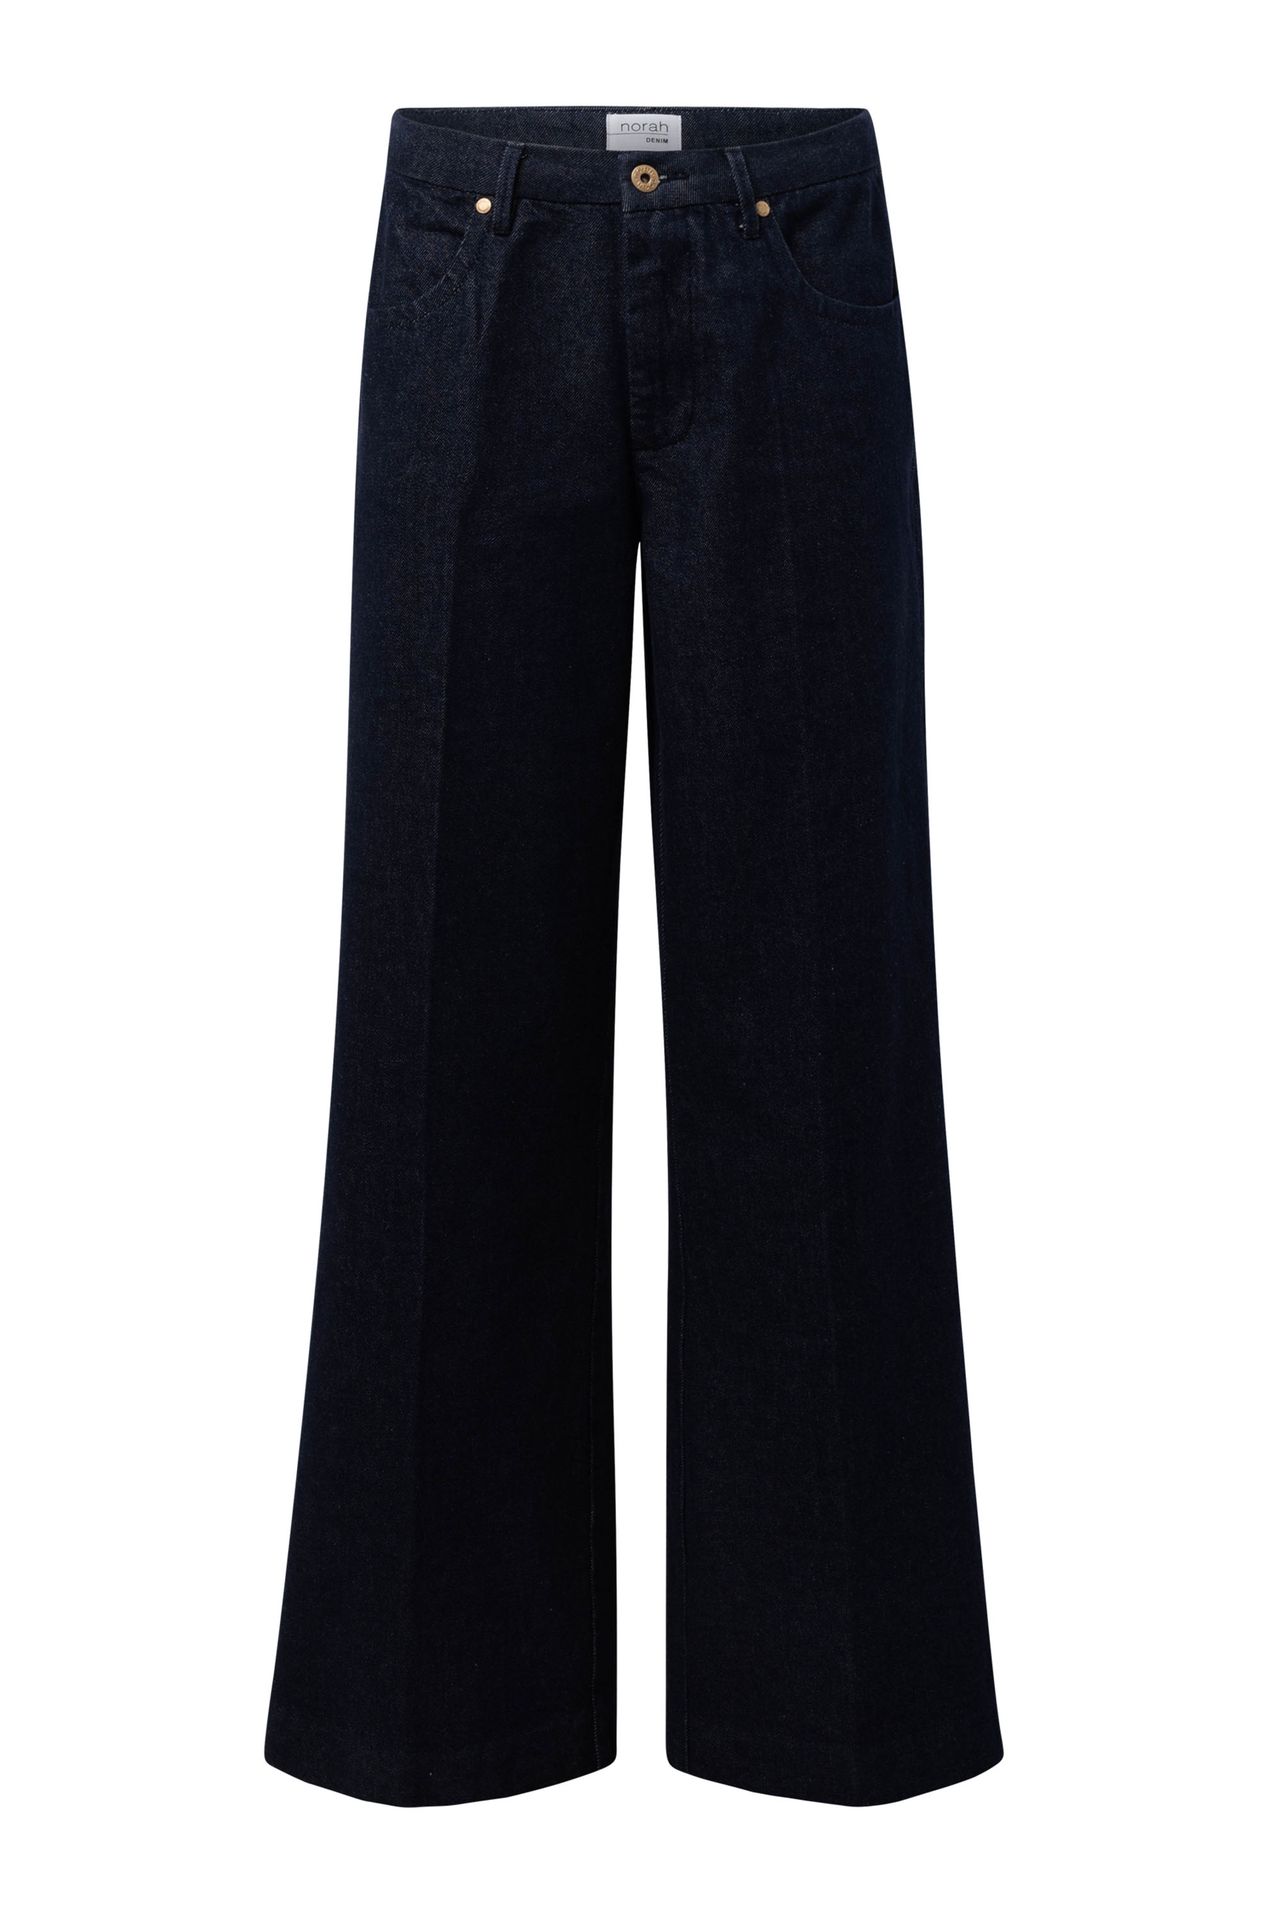 Norah Donkere denim jeans denim blue 214657-472-38